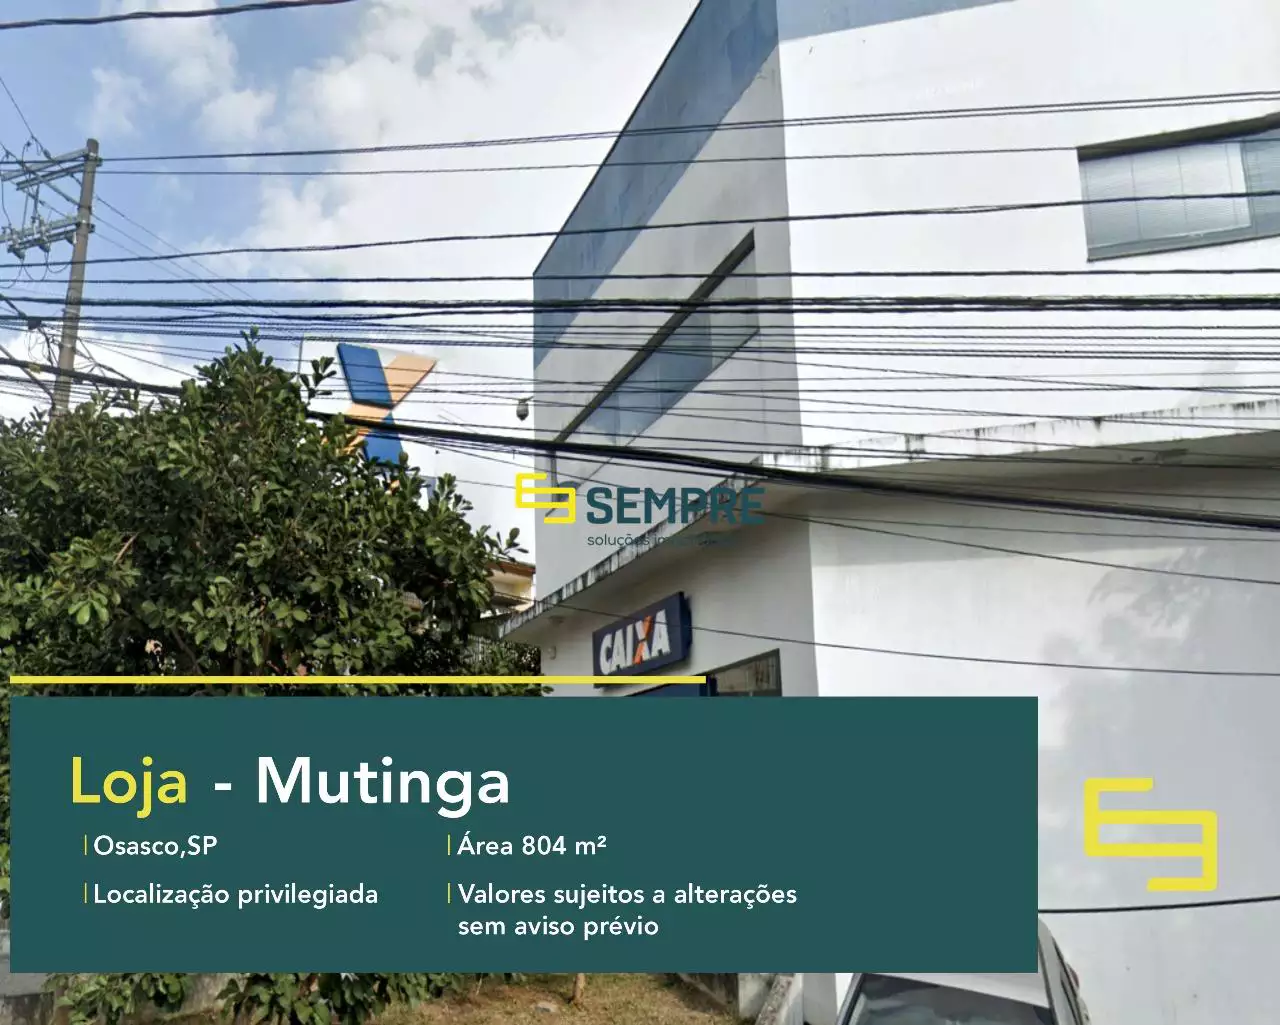 Loja para alugar em Mutinga Osasco/SP, em excelente localização. O estabelecimento comercial conta com área de 804 m².